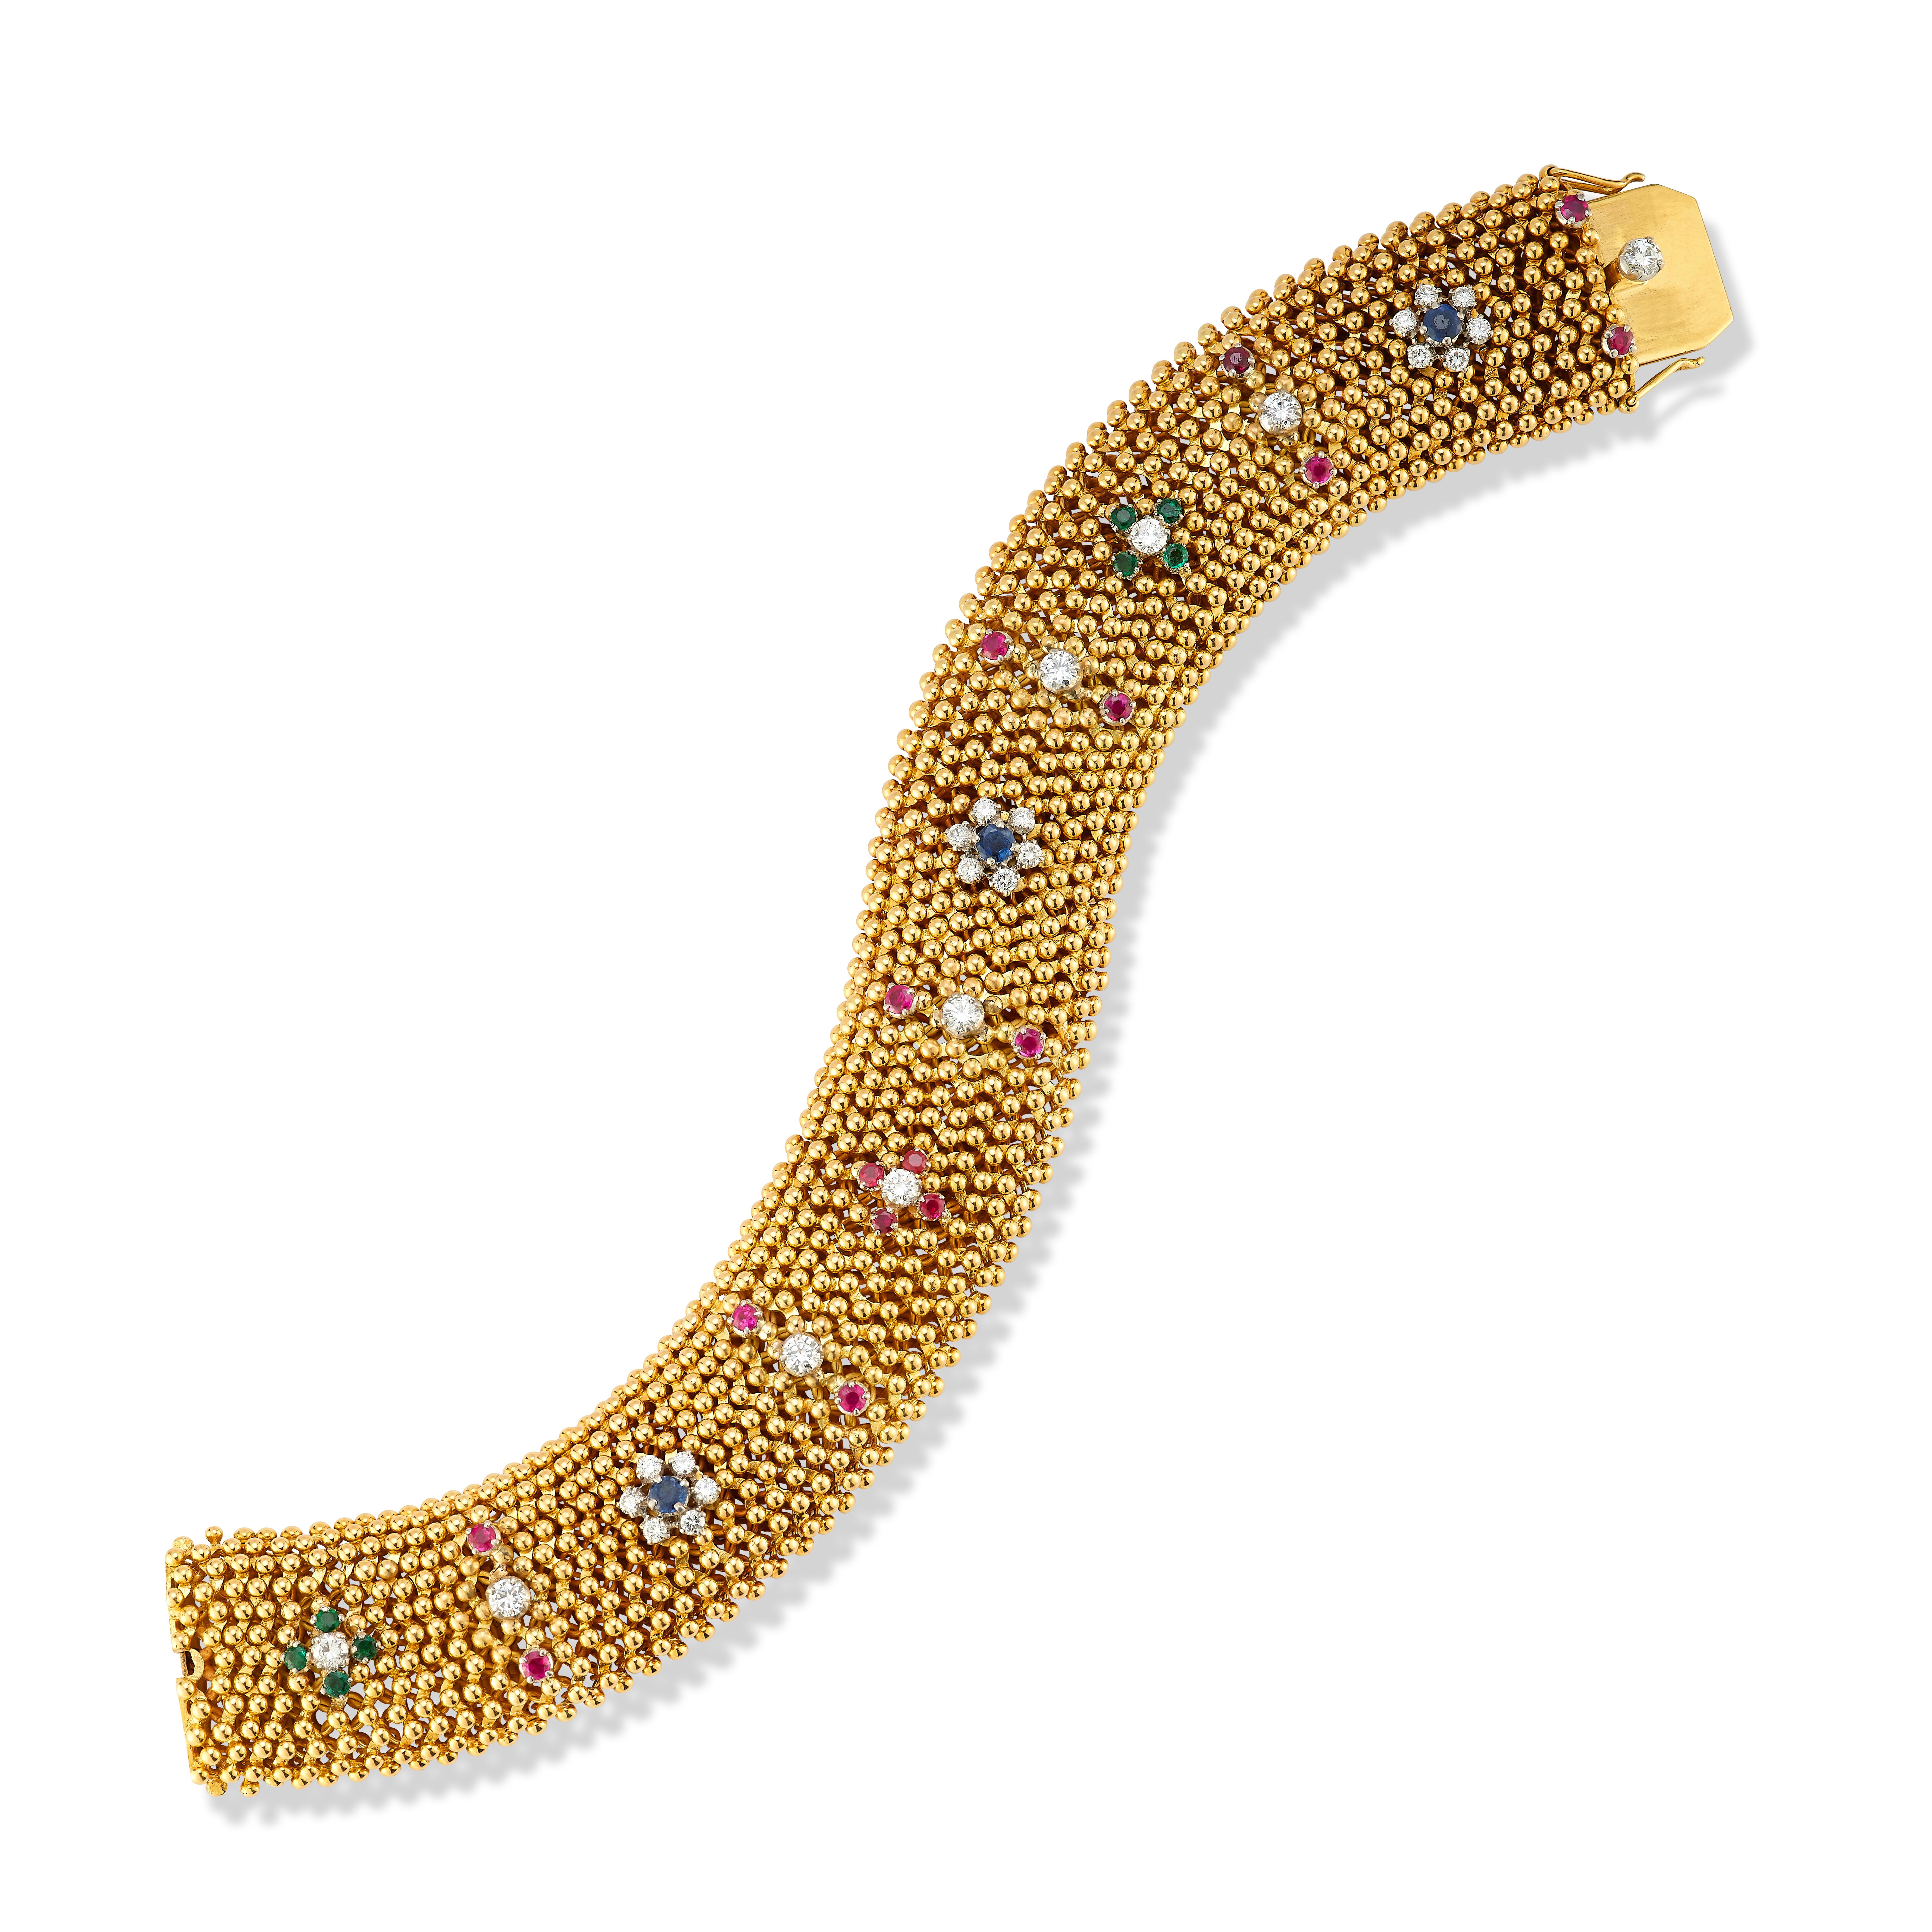 Bracelet Bulgari en or à pierres multiples

Bracelet en or jaune 18 carats serti de diamants ronds, de rubis, d'émeraudes et de saphirs dans un motif répétitif

Signé Bvlgari
Estampillé 750

Poids total approximatif des diamants : 1,5 carats
Poids